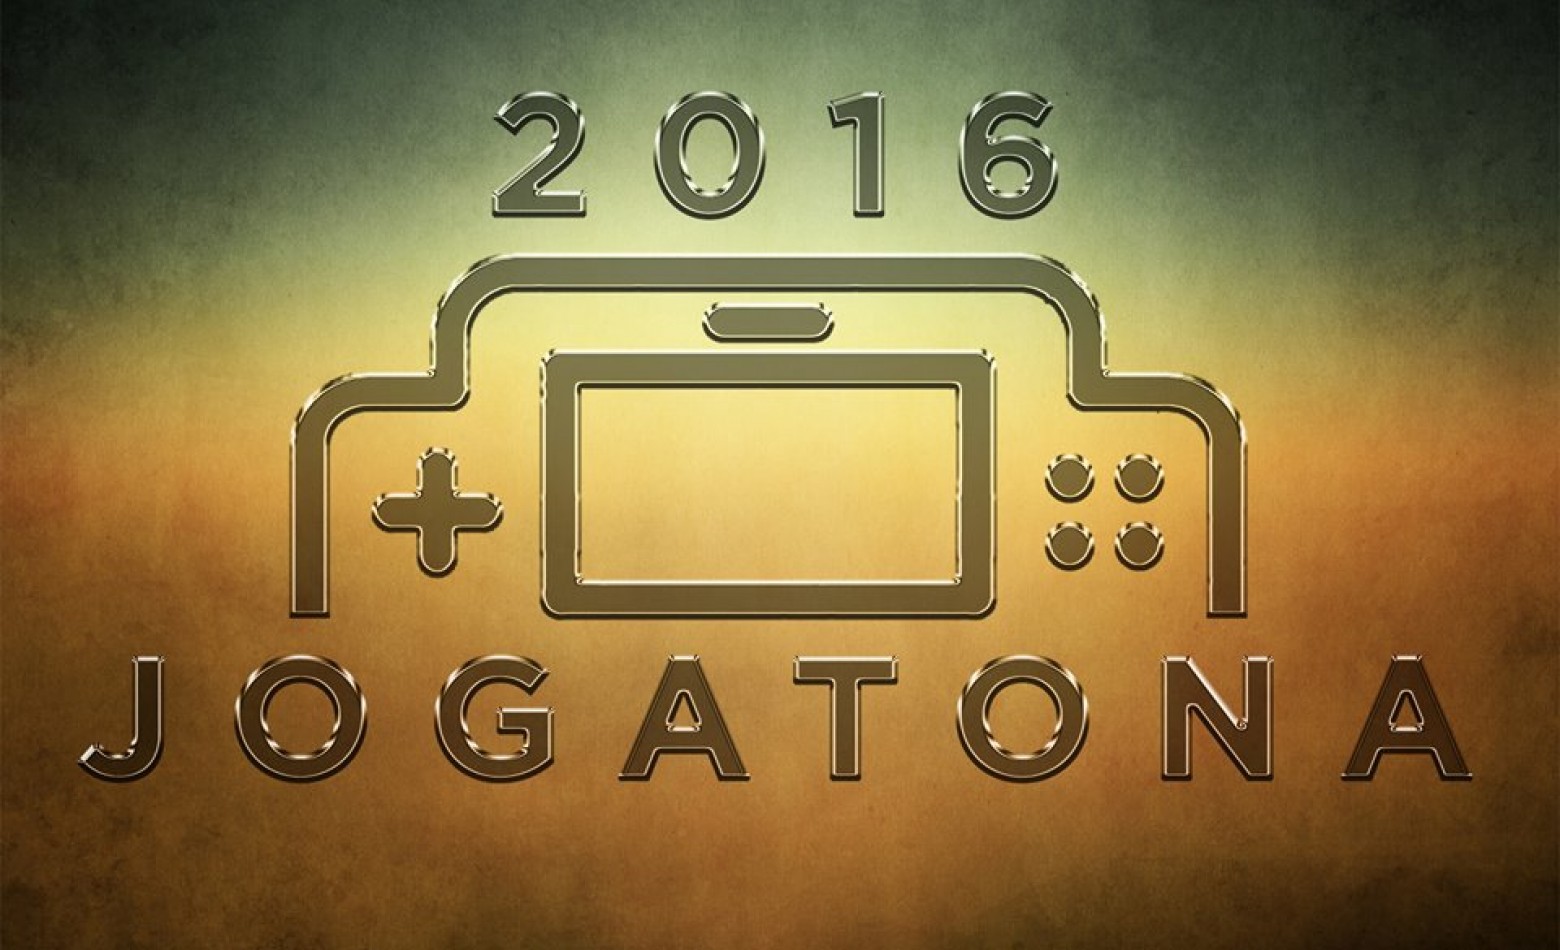 Jogatona 2016 começa em 27 de fevereiro